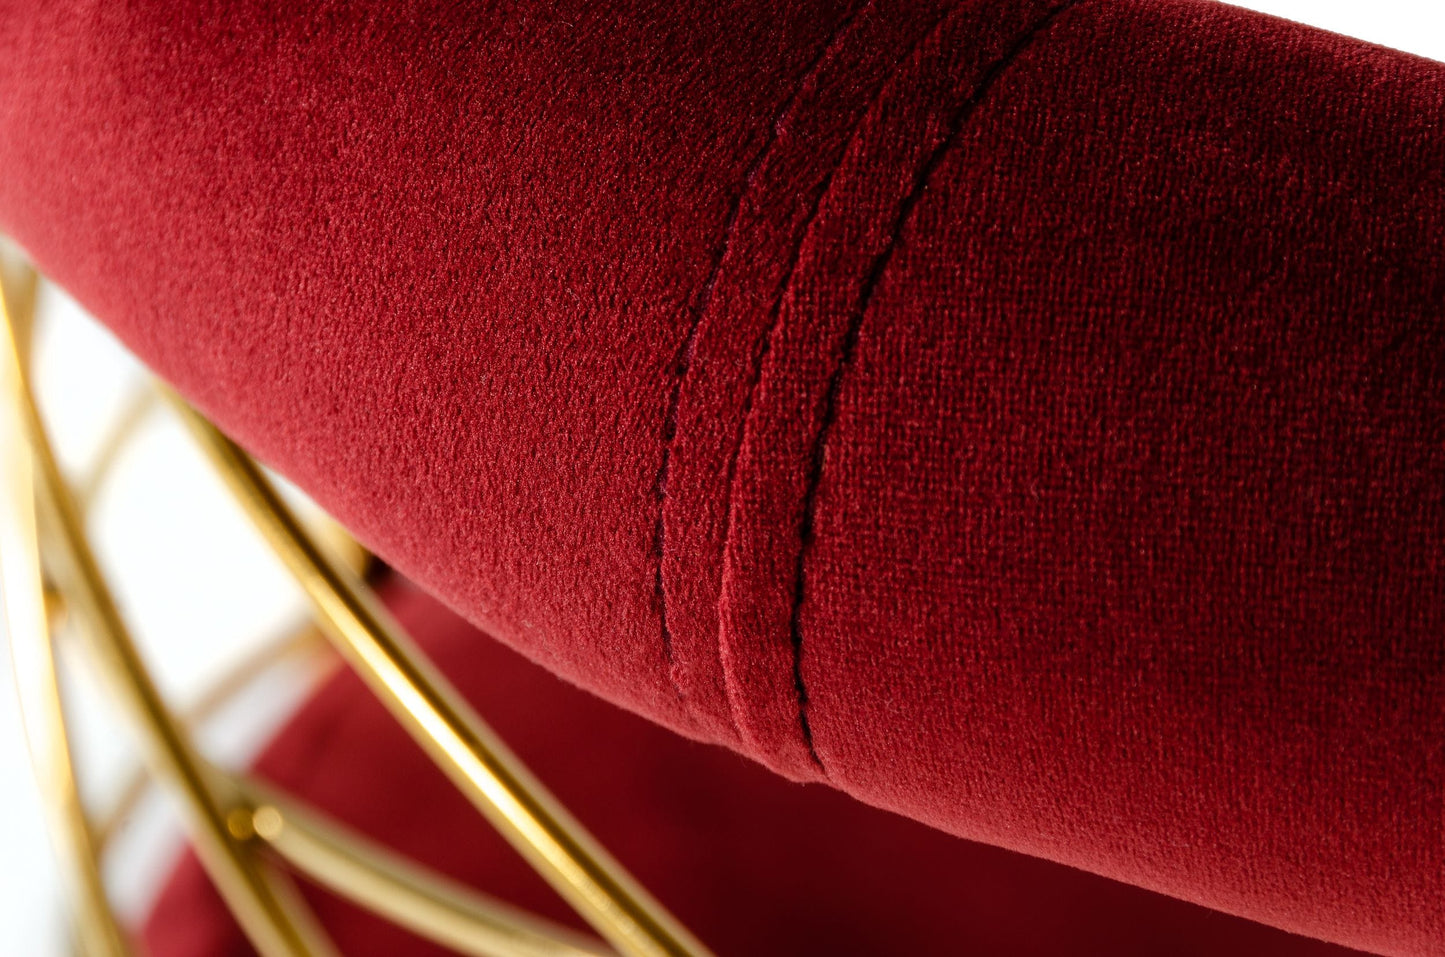 VIG Furniture Modrest Dakin Glam Red Gold Barstool